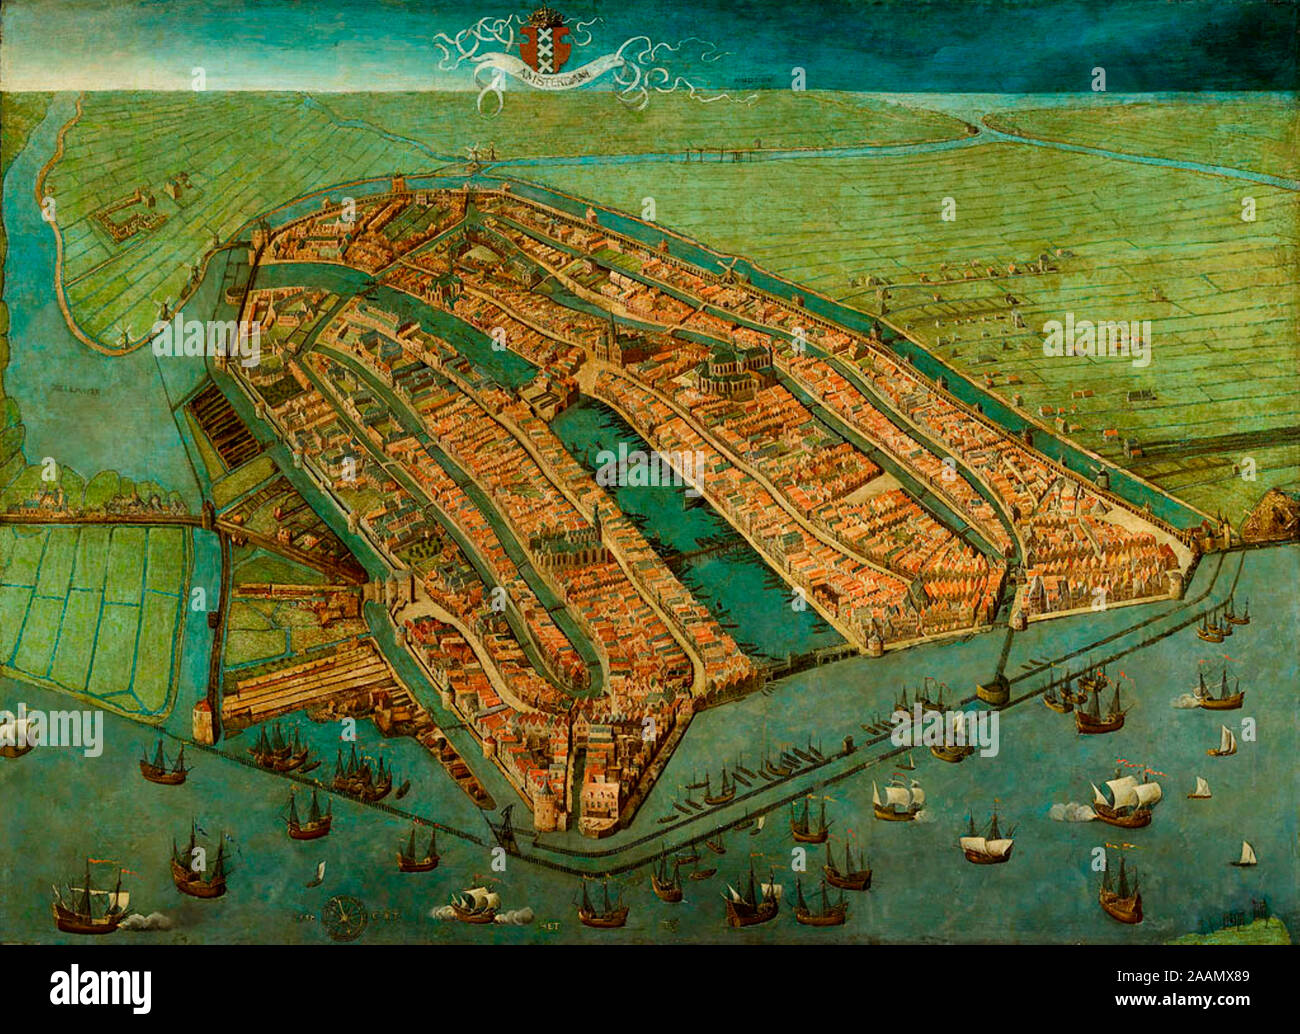 Panoramica di Amsterdam - la più antica mappa del superstite di Amsterdam, che mostra la città è finito mura medievali, torri e porte. Come nella maggior parte delle antiche mappe di Amsterdam la città è rappresentata dall'IJ, in modo che la vista è rivolta a sud piuttosto che del nord - Cornelis Anthonisz, circa 1538 Foto Stock